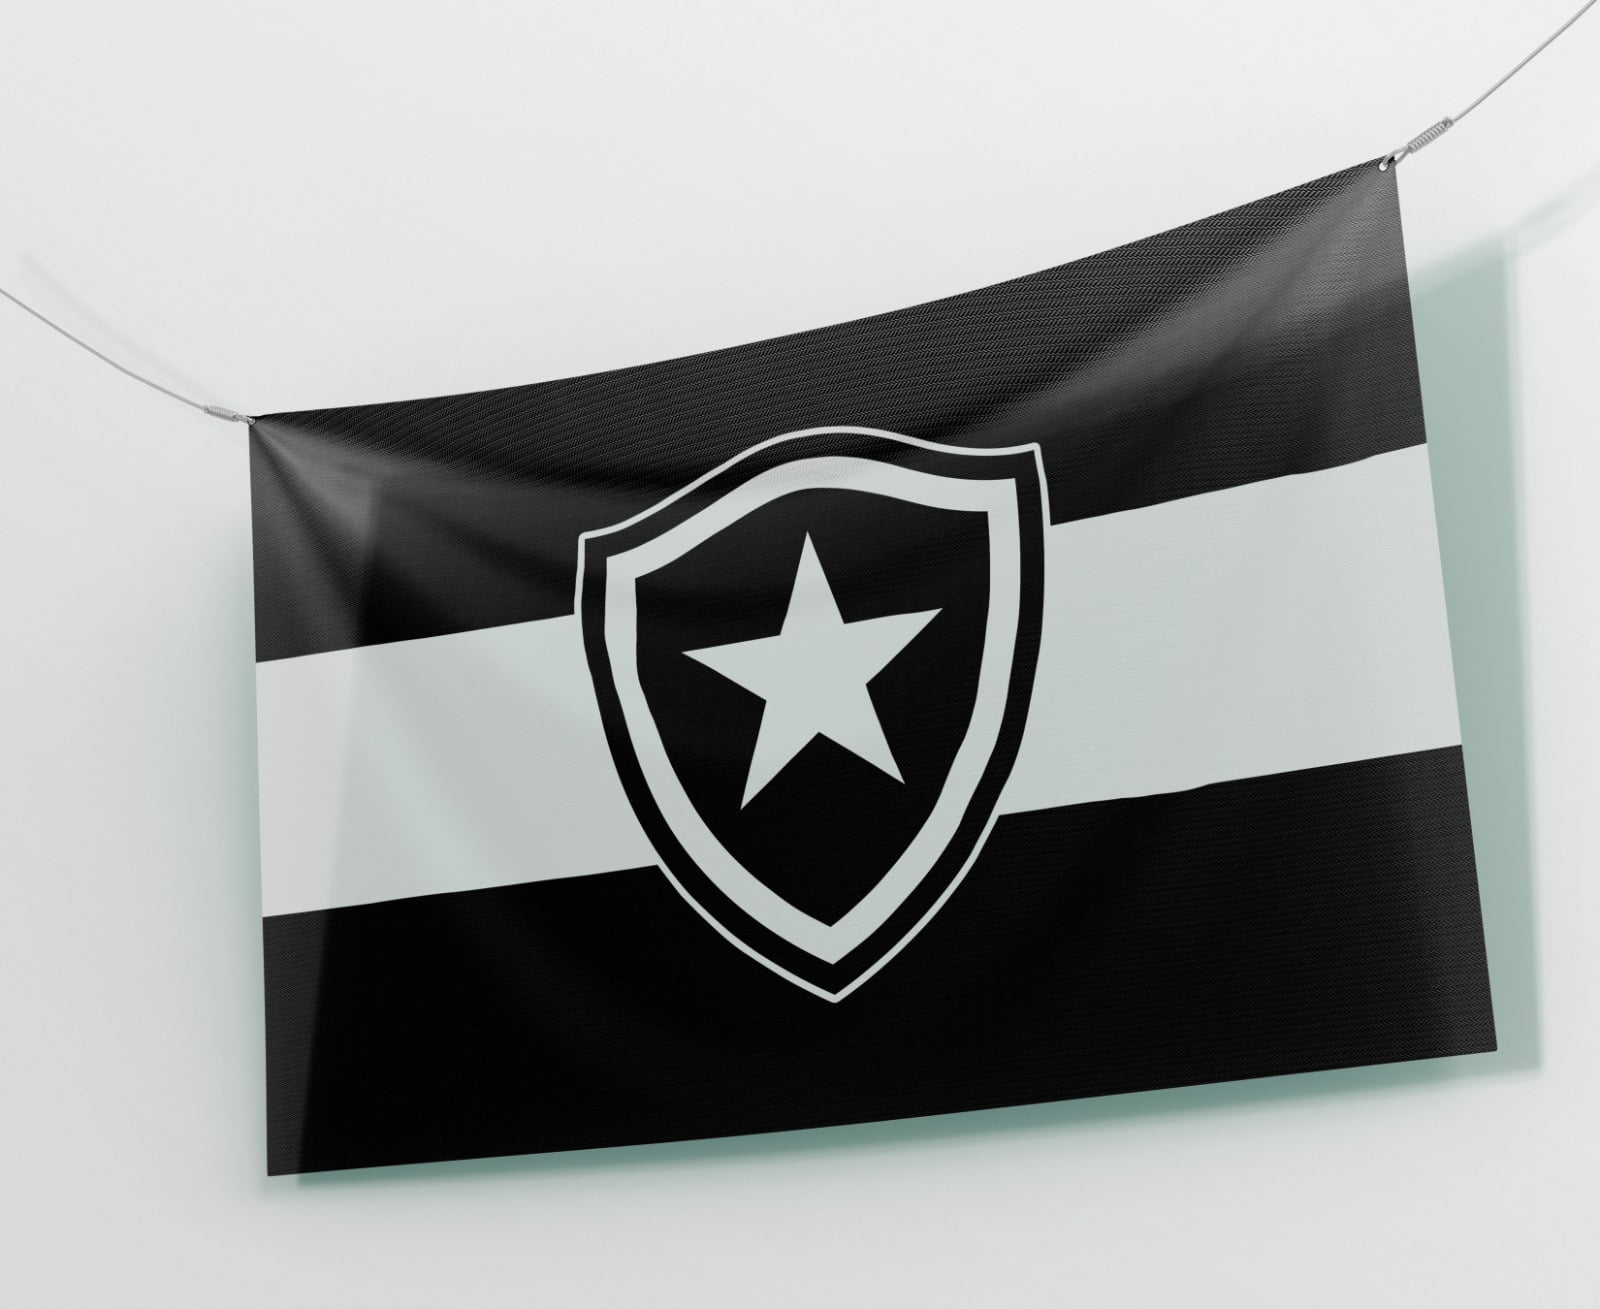 Bandeira do Botafogo